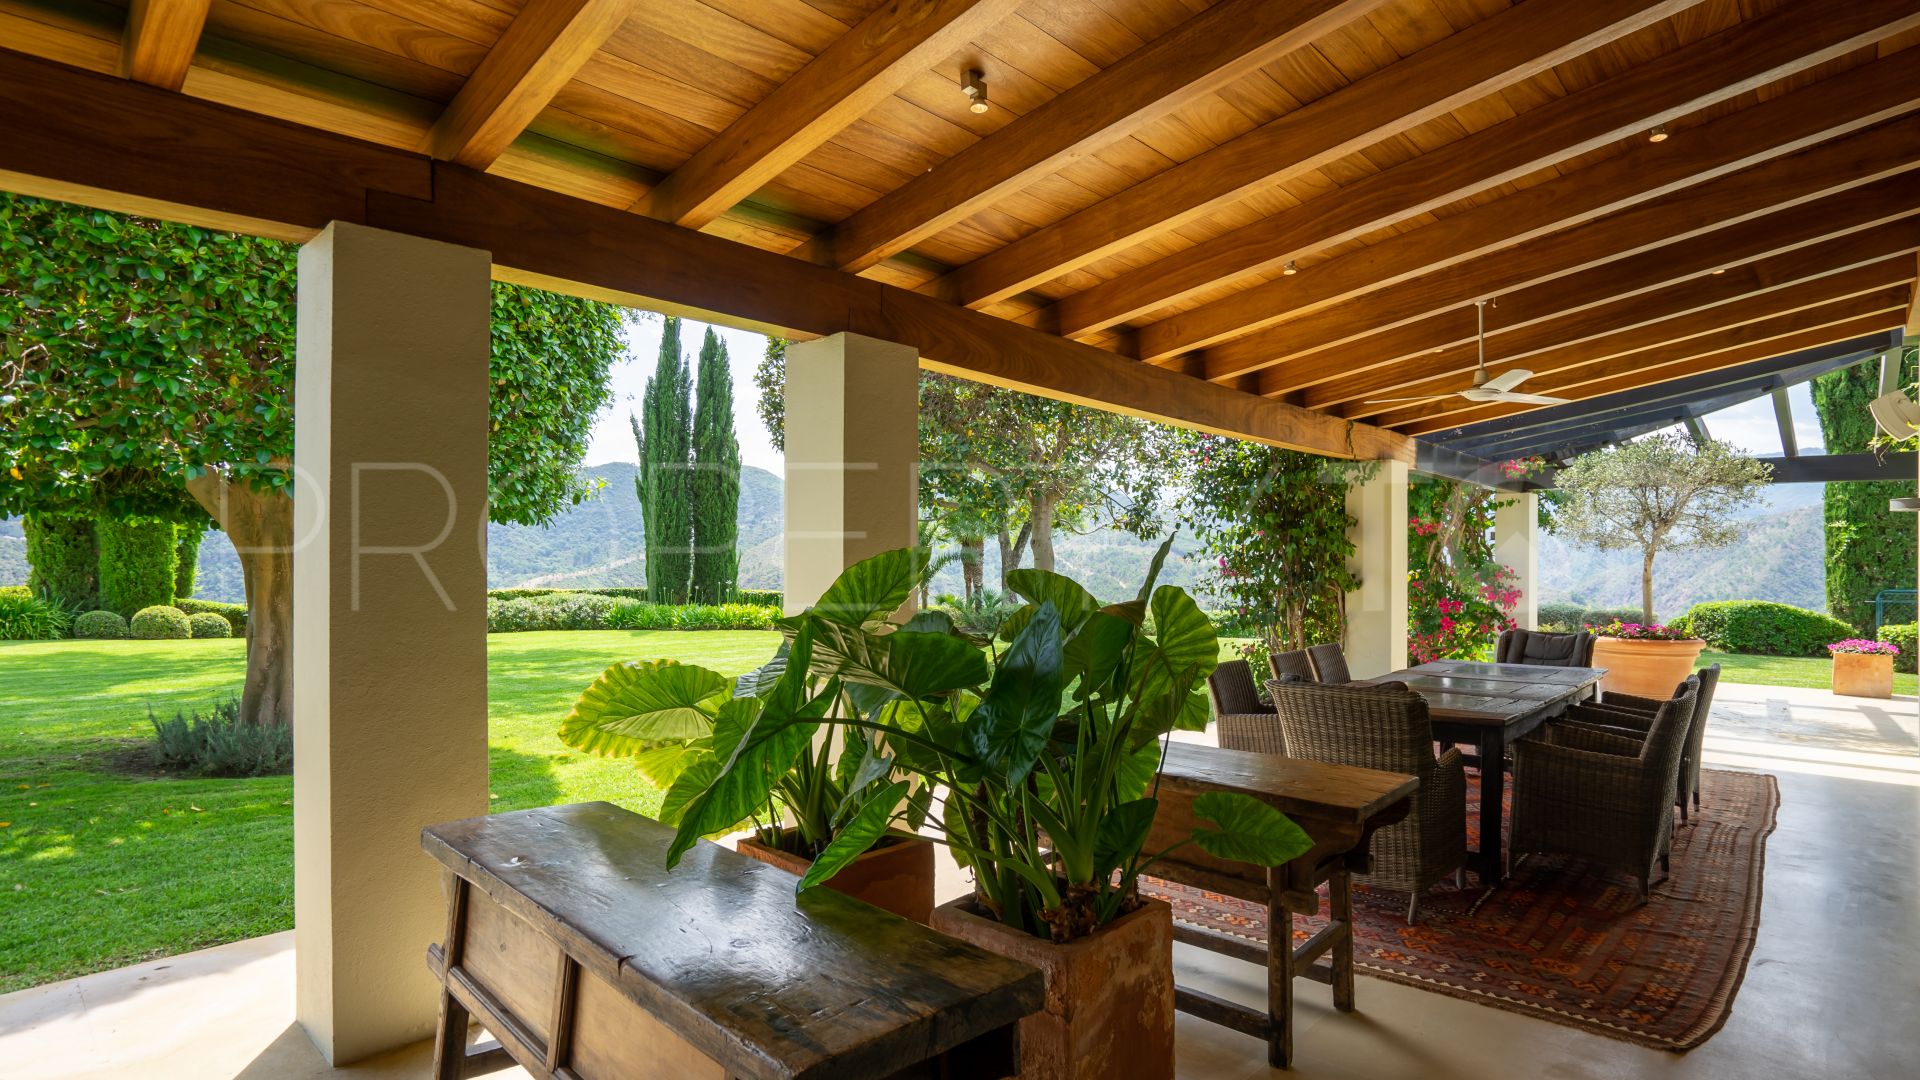 8 bedrooms villa in La Zagaleta for sale